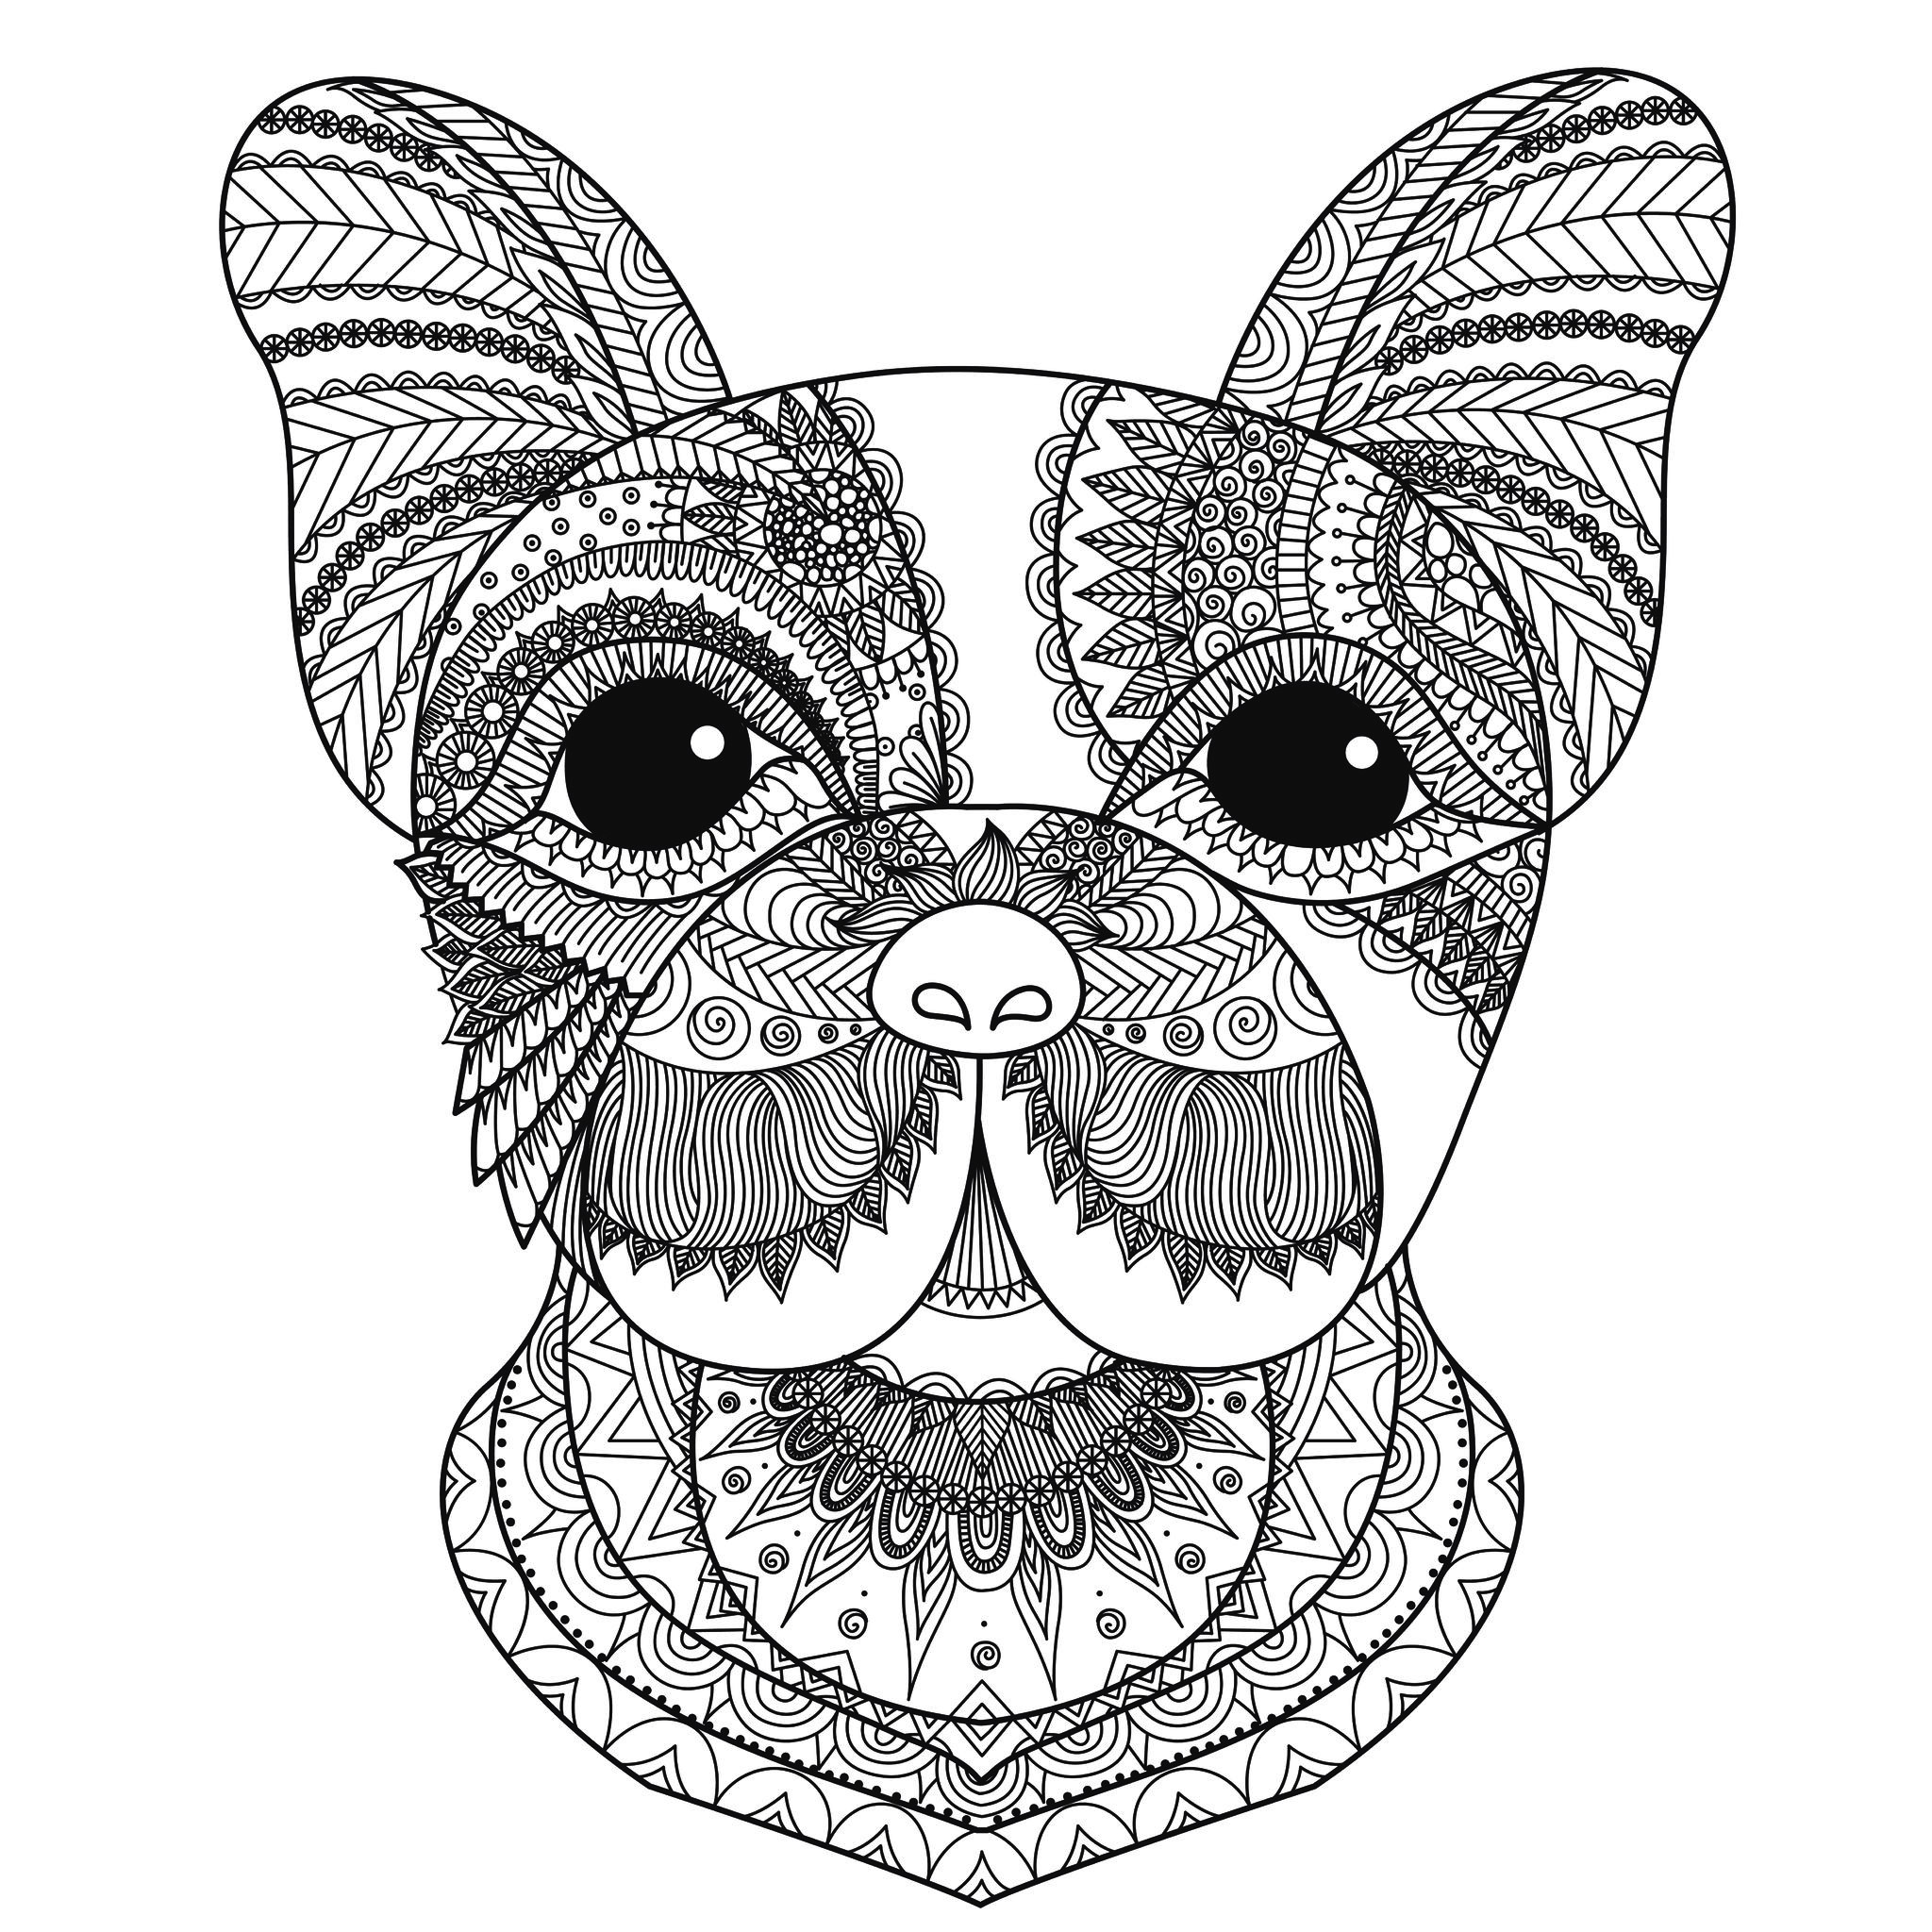 Desenhos para colorir de Animais para imprimir, Artista : Bimdeedee   Fonte : 123rf